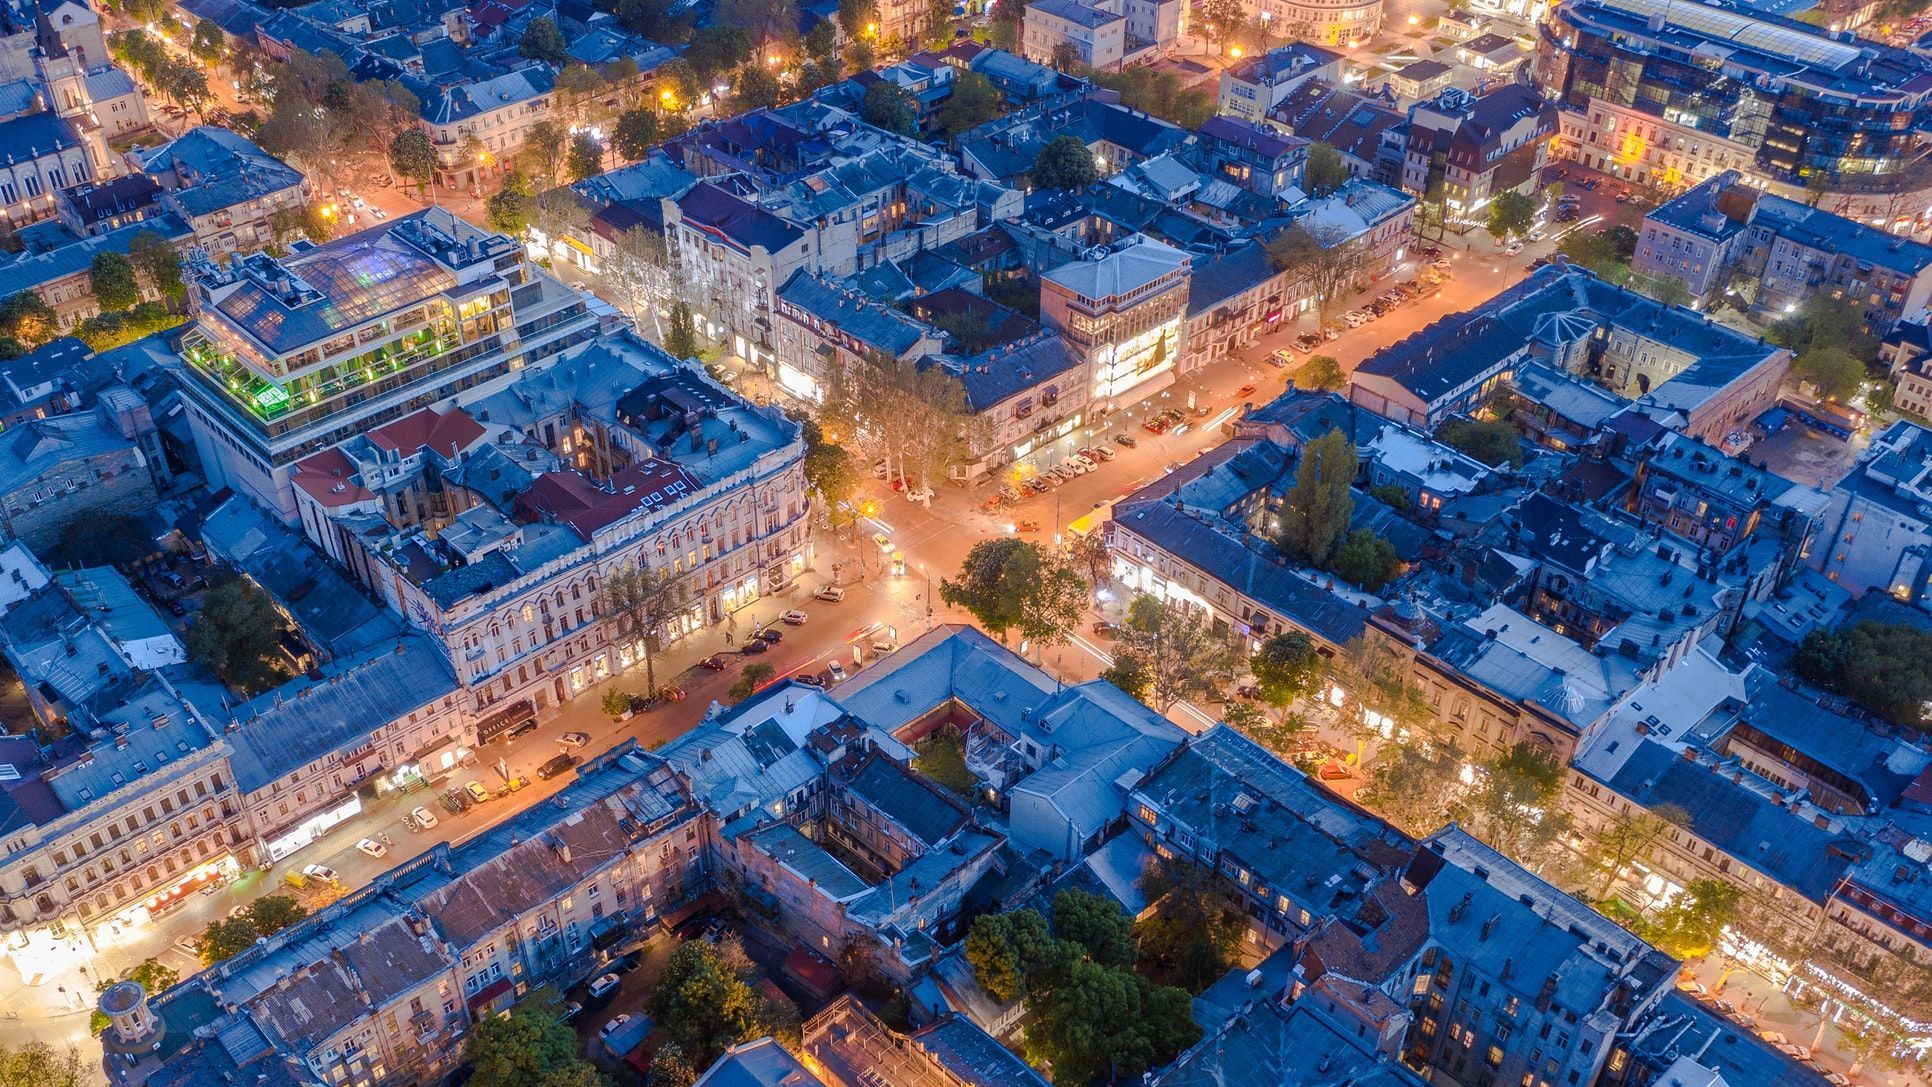 За время пандемии цены на квартиры выросли до 50%: какой город остался самым дешевым - Новости Одессы - Недвижимость